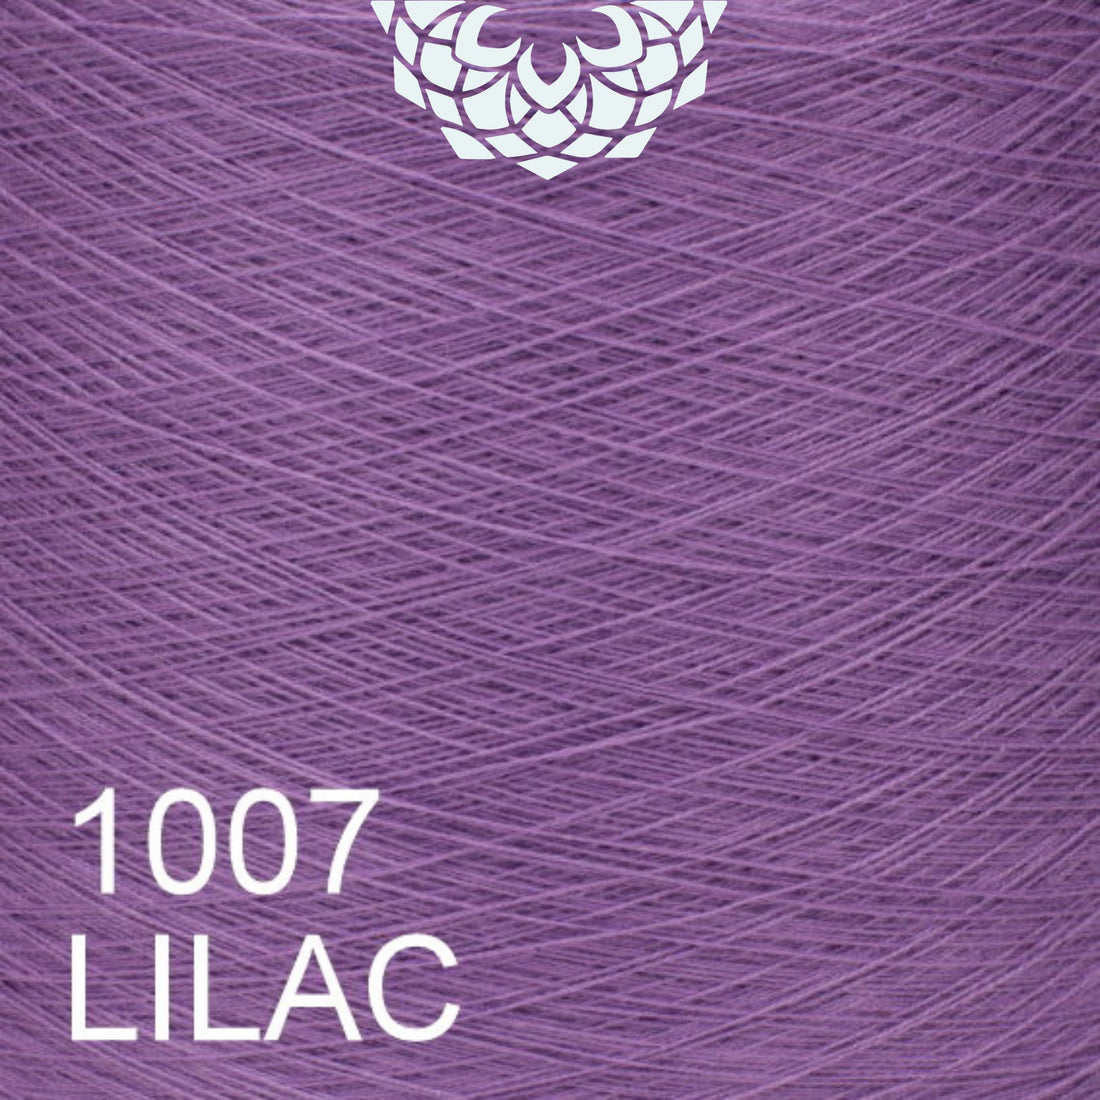 Lilac violet